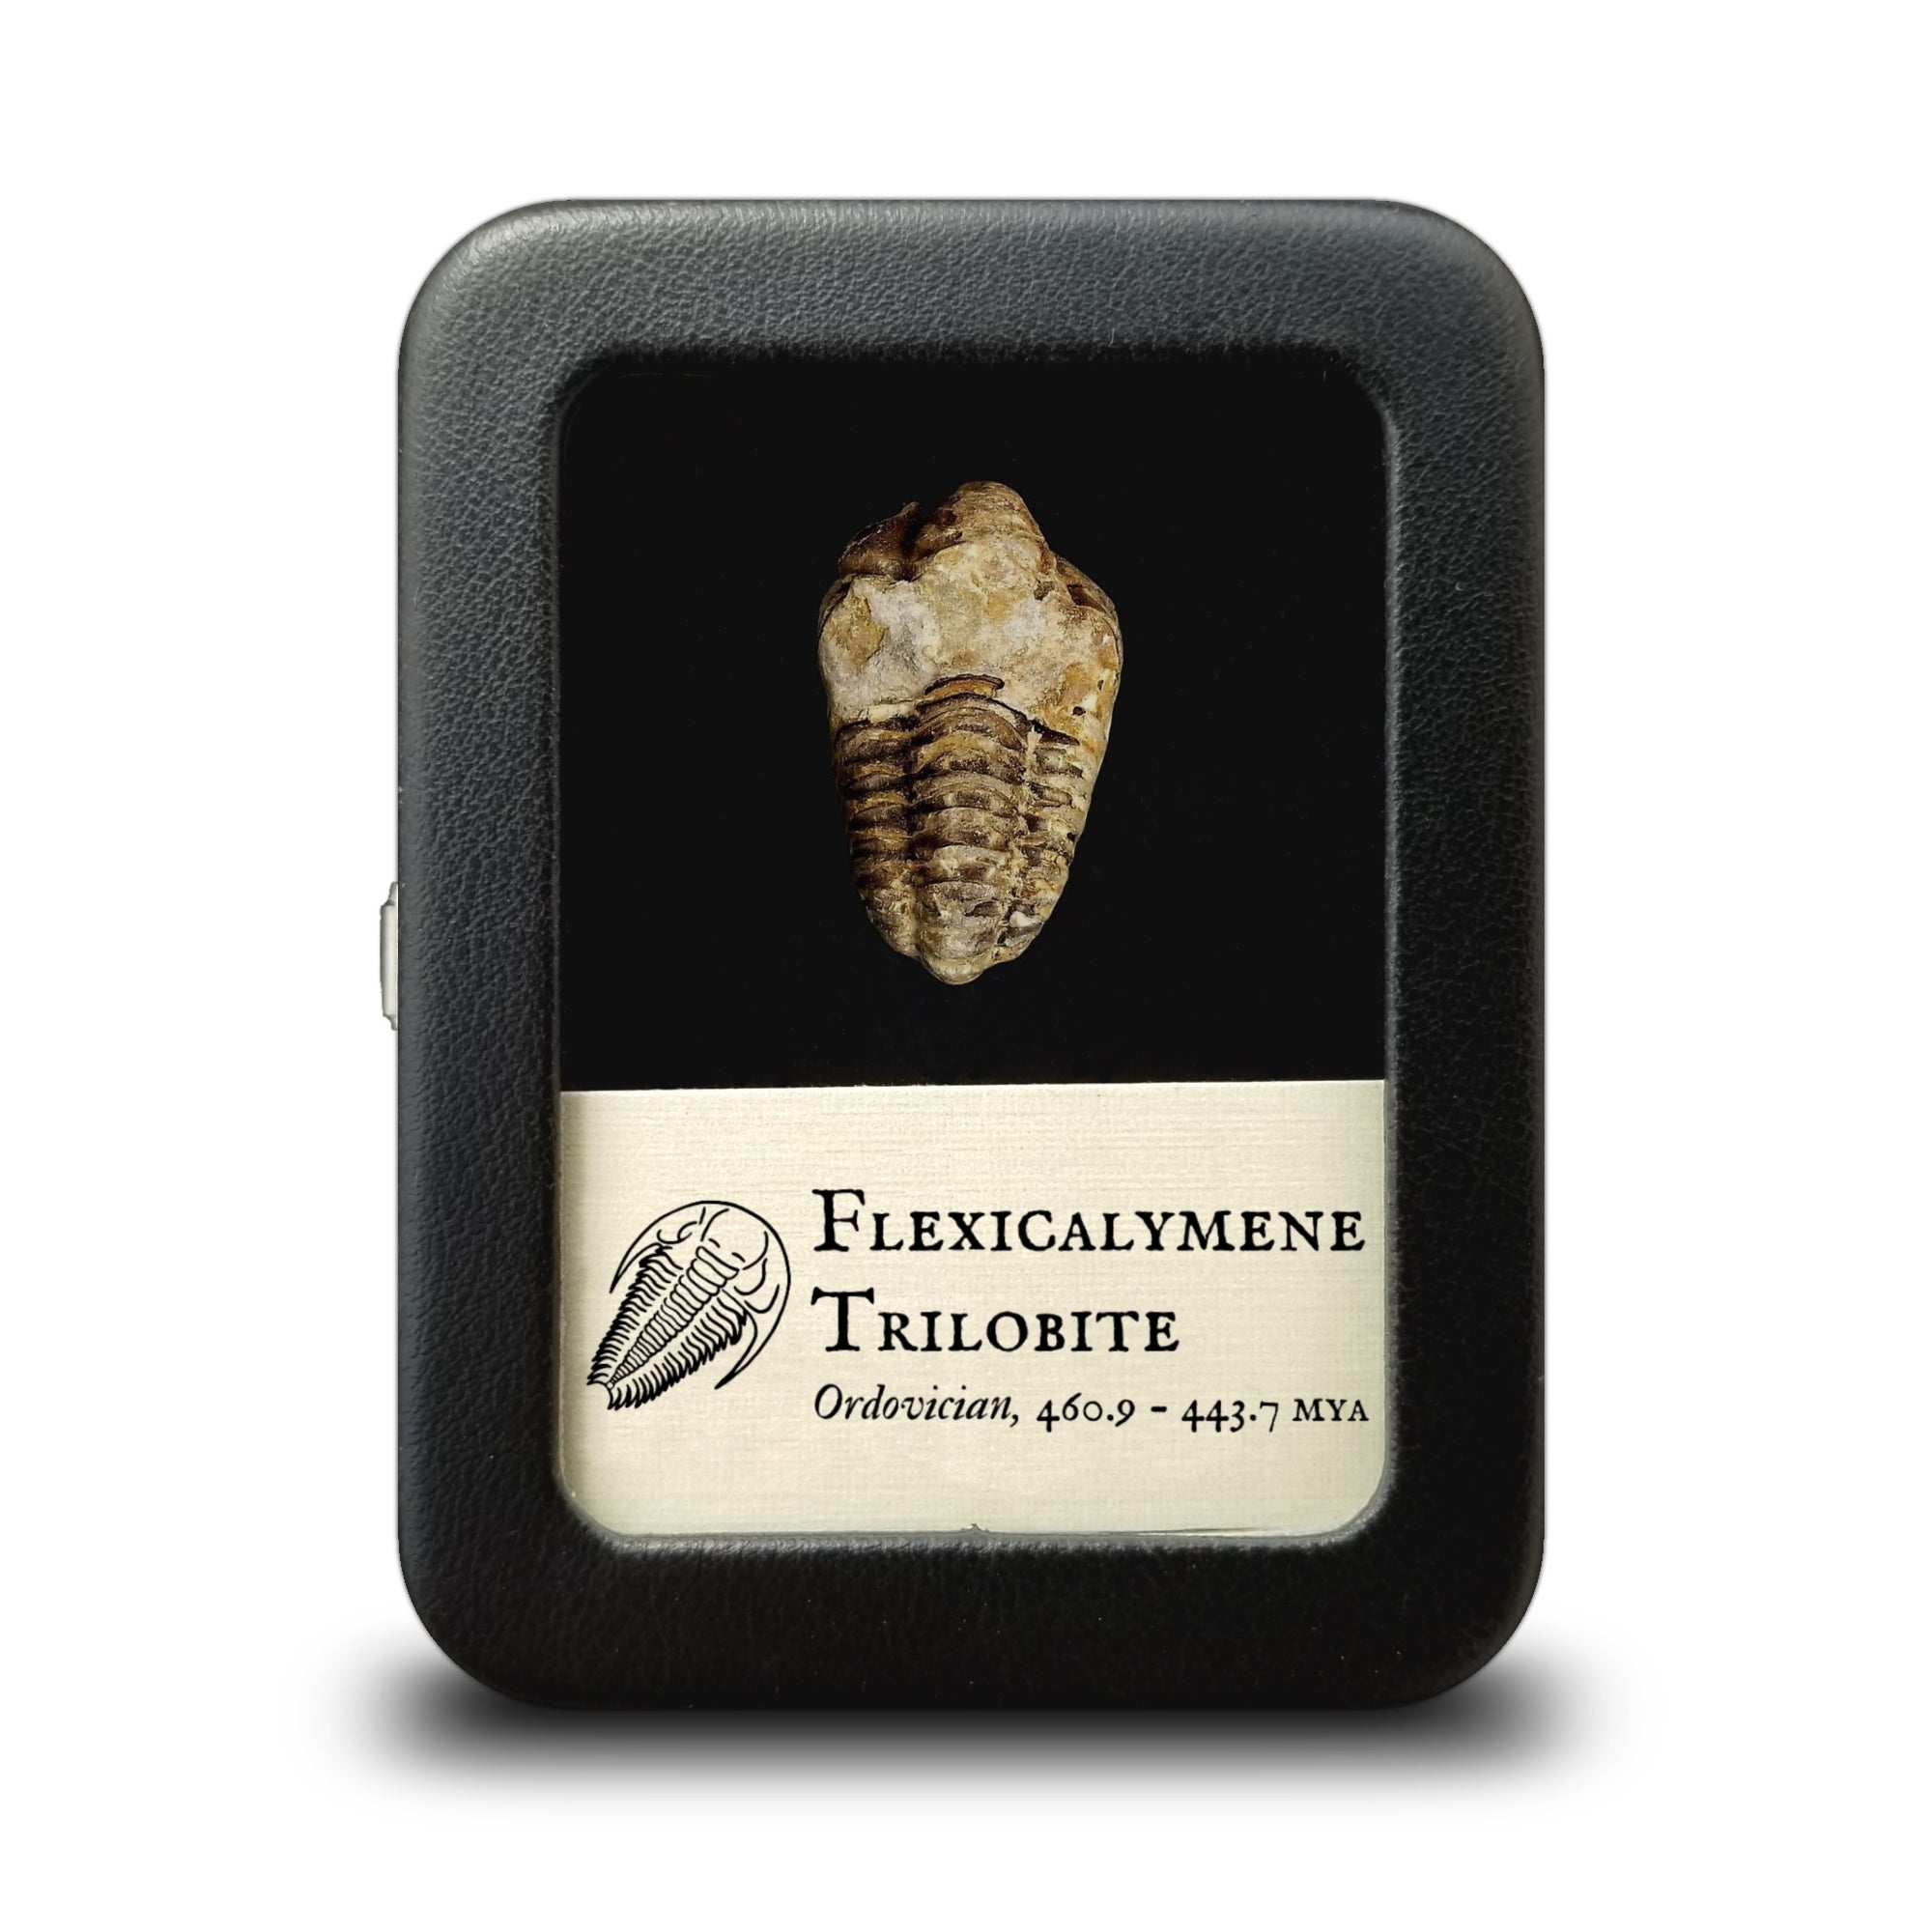 Flexicalymene Trilobite - Ordovician Period - 460.9 to 443.7 MYA - Morocco